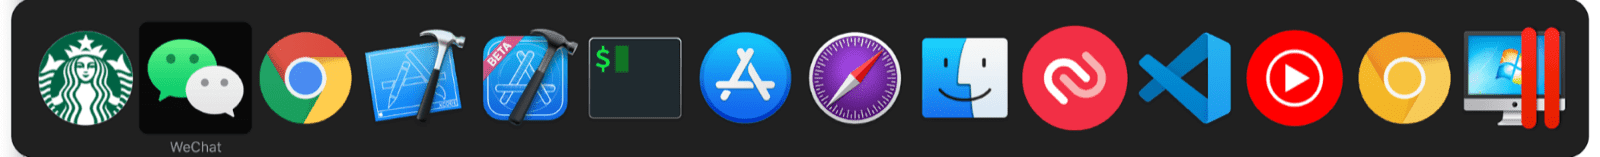 macOS マルチタスク スイッチャーには、通常の macOS アプリに加えて、ミニアプリが含まれています。